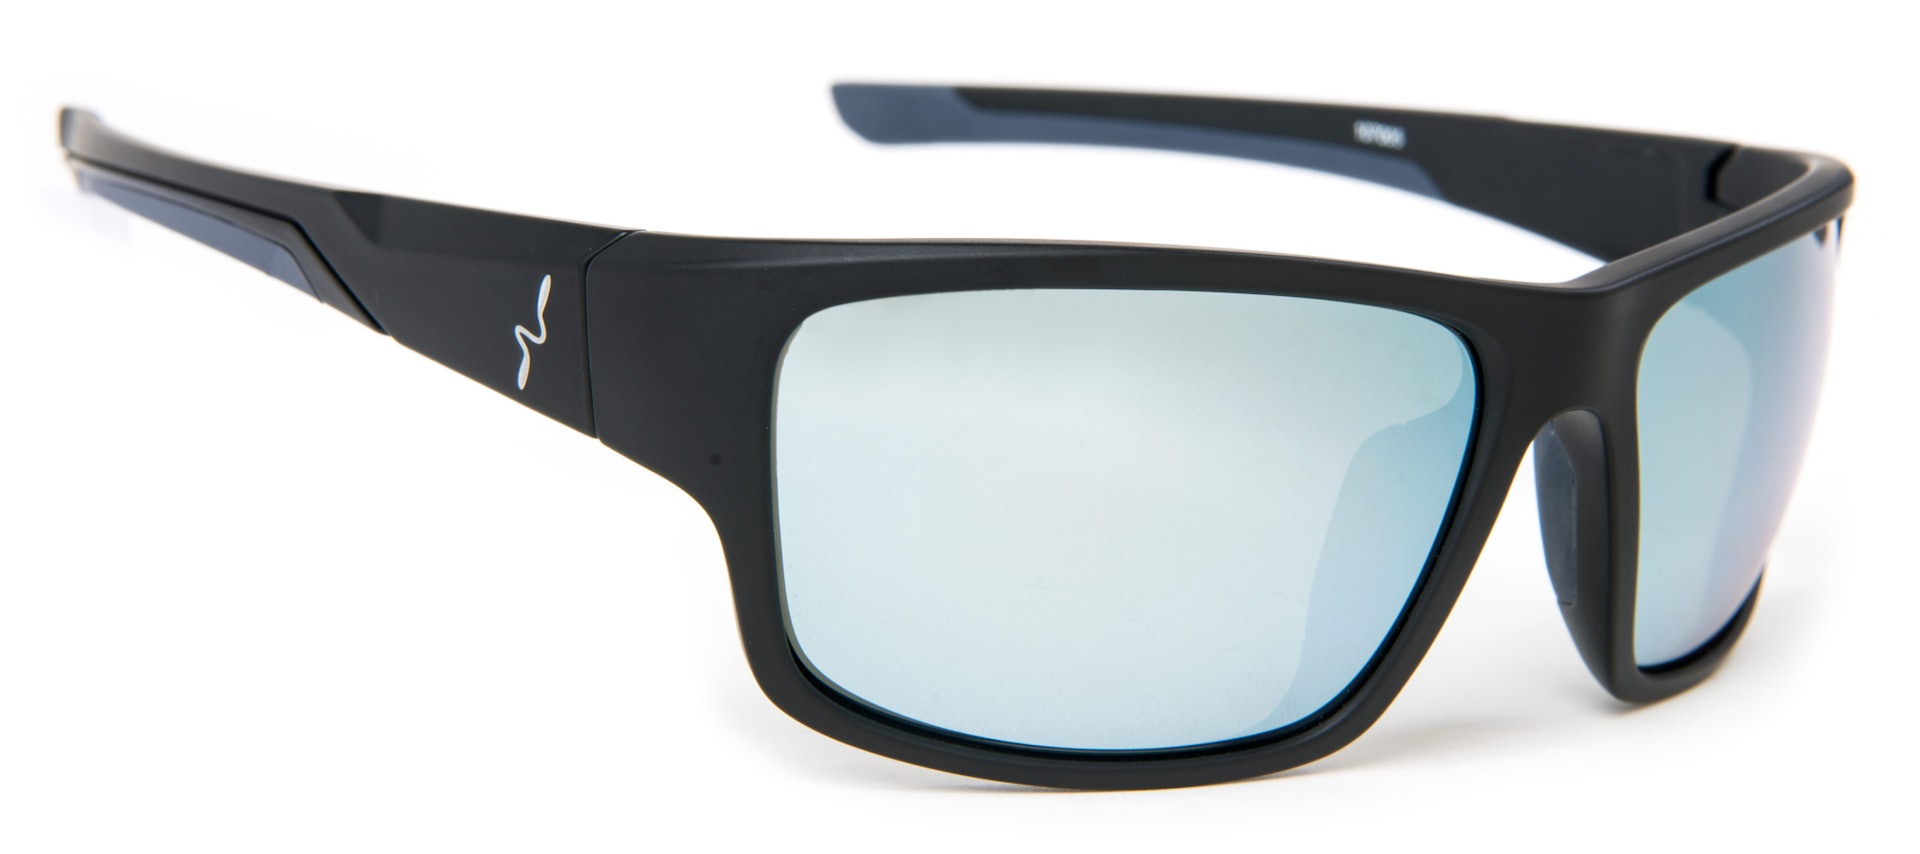 Experience Sunglasses - Grey-Green Lens (bilde 1 av 1)